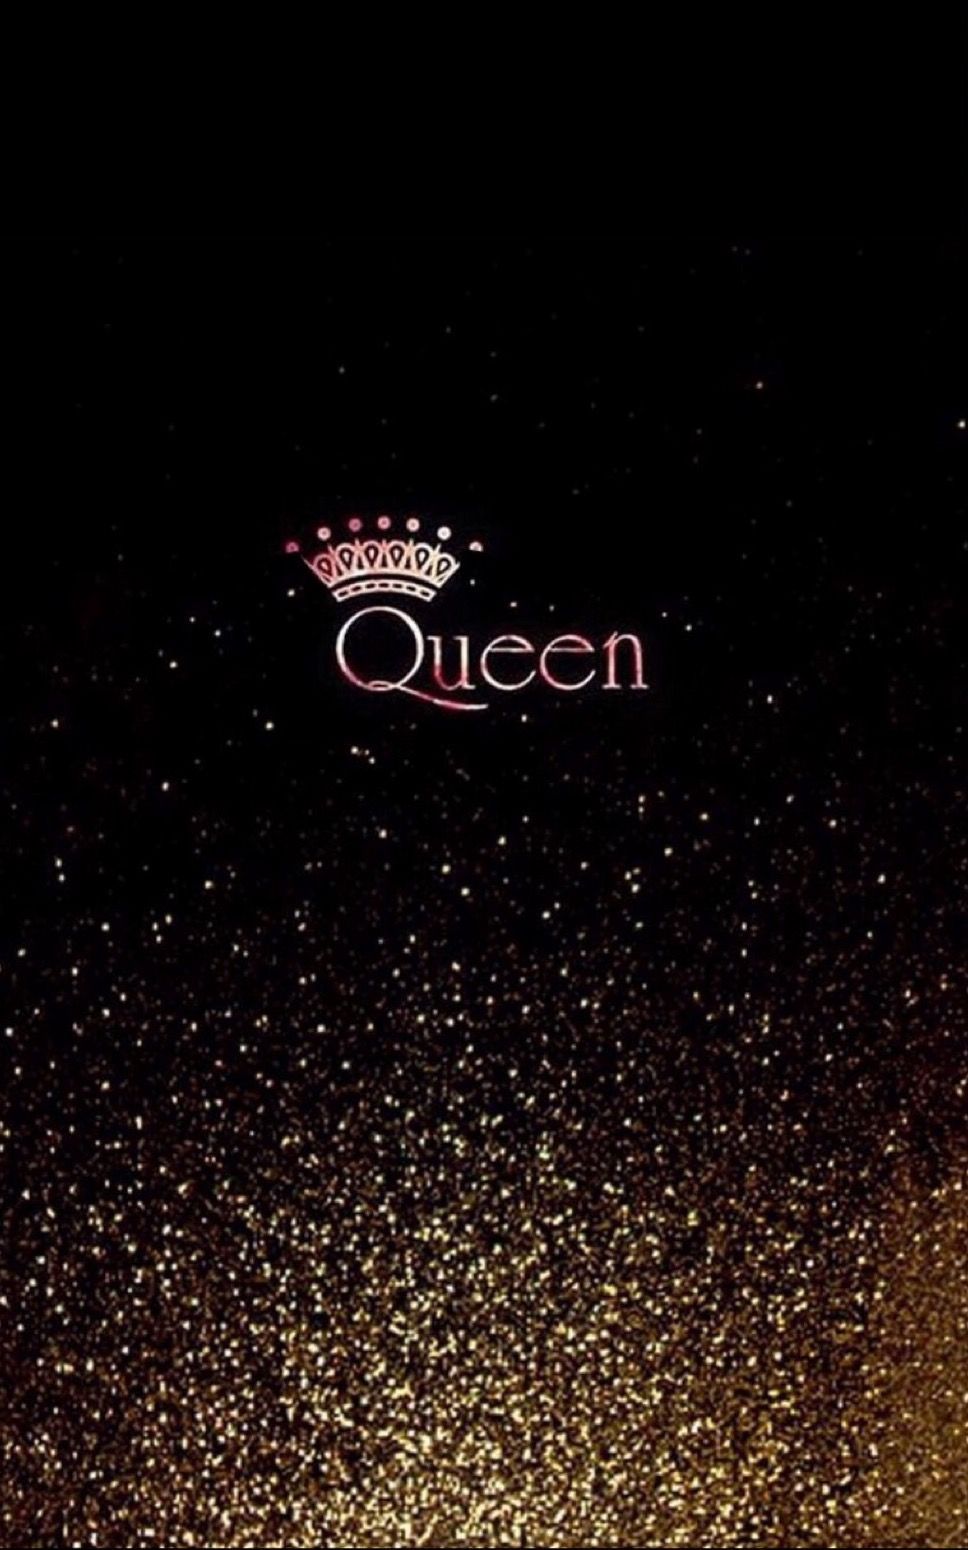 Queen iPhone Wallpaper Free Queen iPhone Background